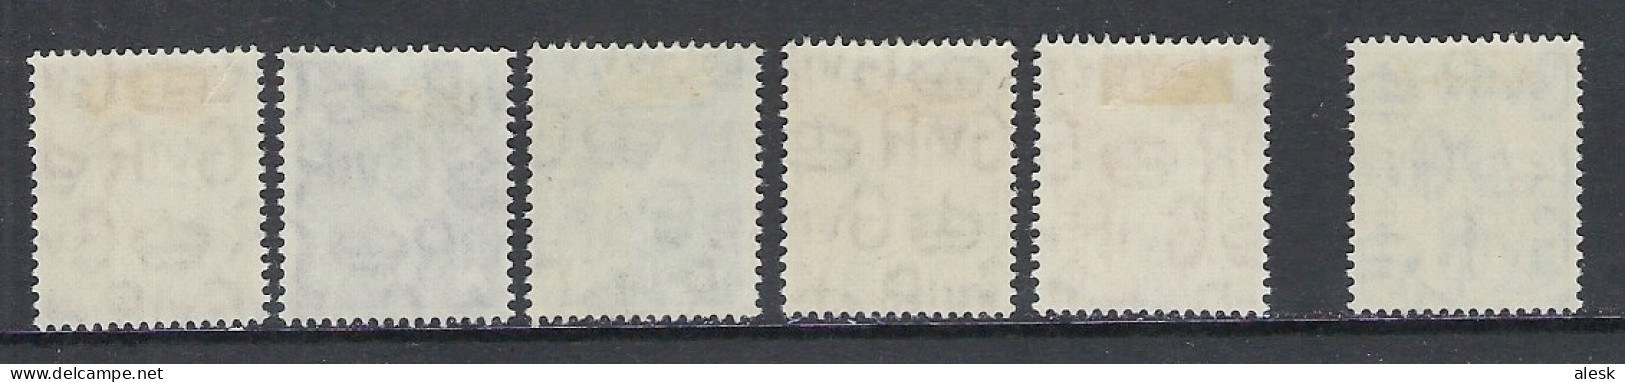 GRANDE-BRETAGNE 1951 - Série N°241 à 255 + 250 (y&t) Avec Charnière - Neufs